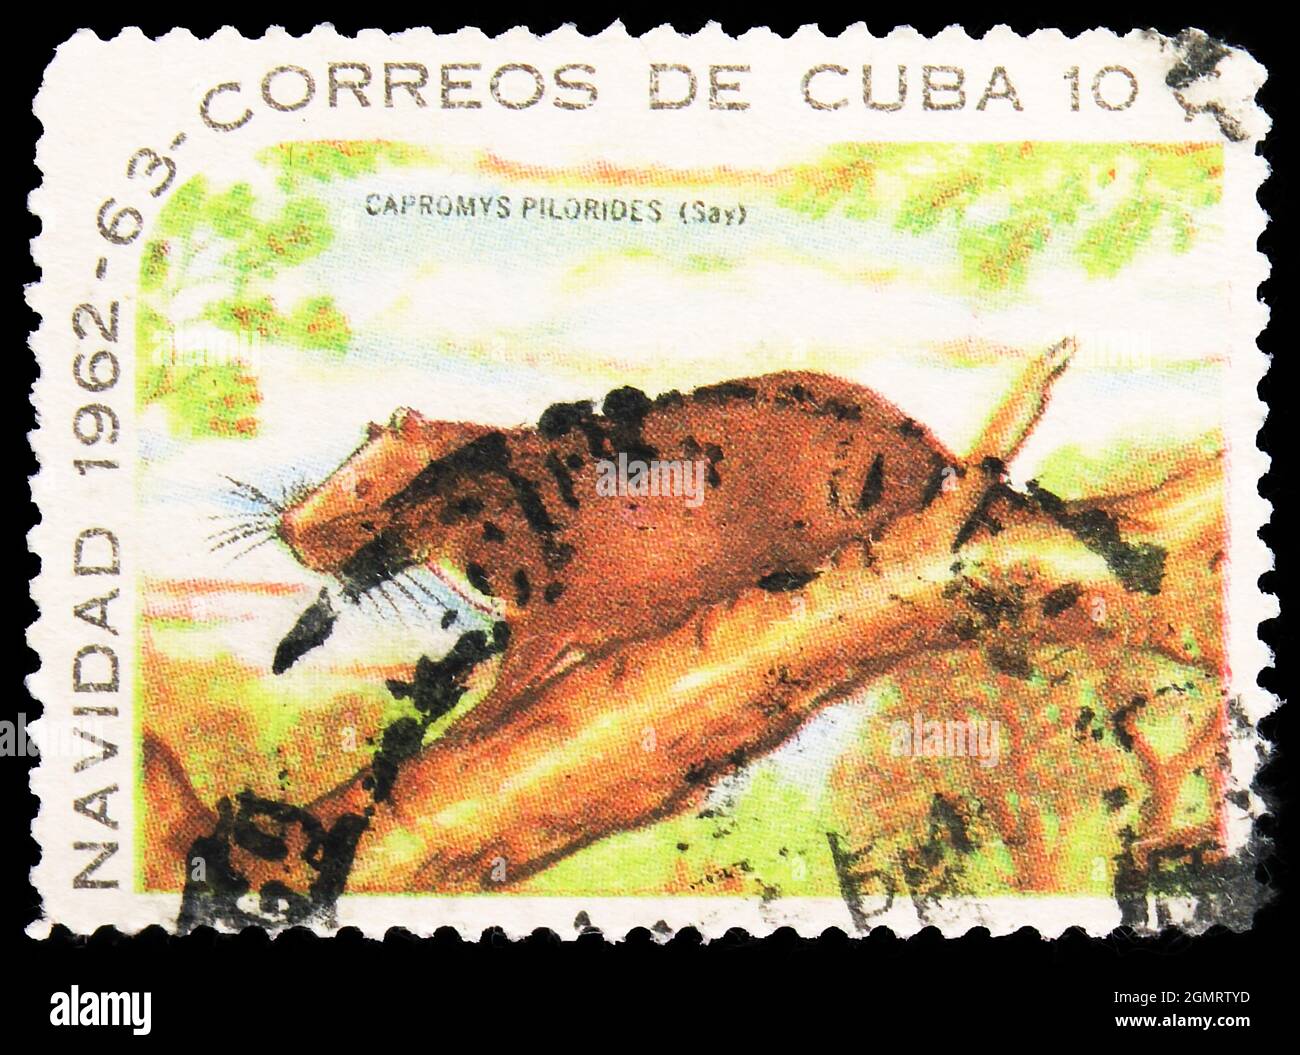 MOSKAU, RUSSLAND - 6. NOVEMBER 2019: Die in Kuba gedruckte Briefmarke zeigt Desmarest's Hutia (Capromys pilorides), Weihnachtsserie 1962, um 1962 Stockfoto